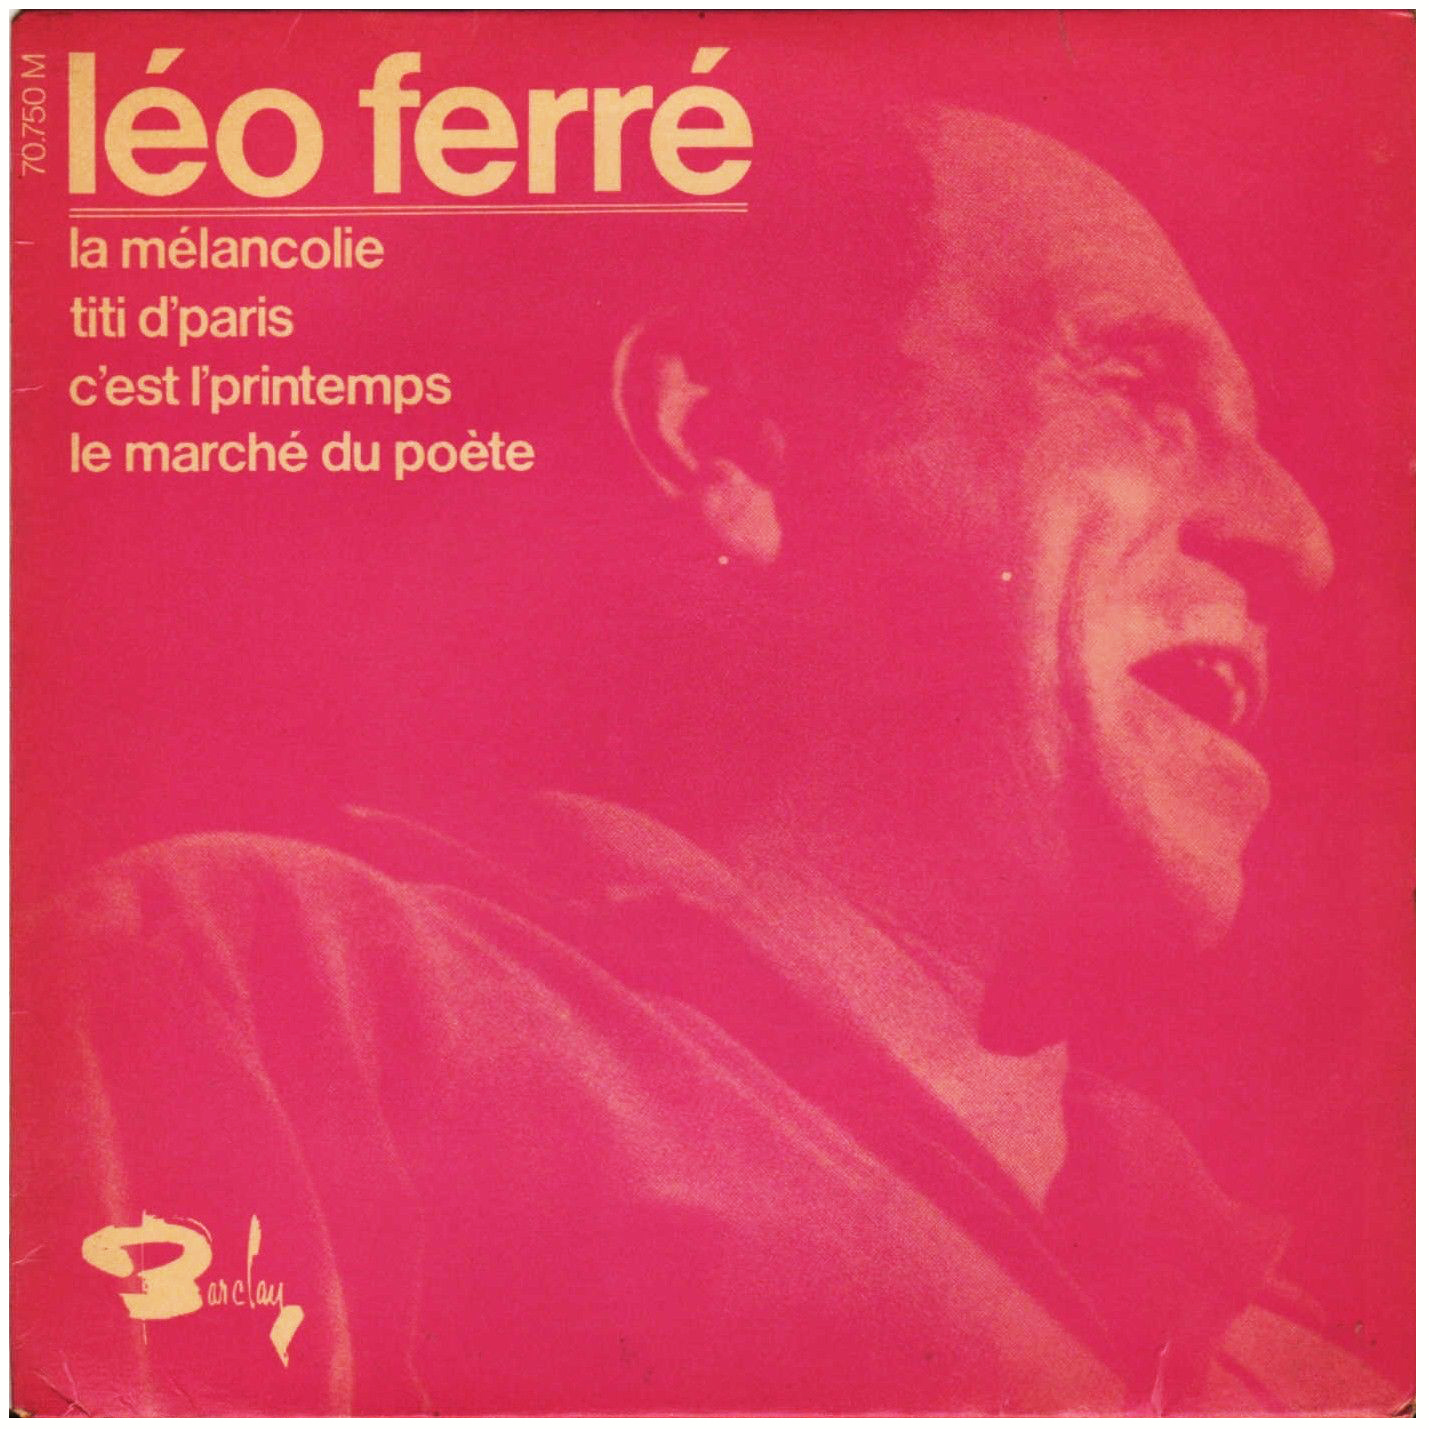 Léo Ferré -  Barclay 70 750 (2)